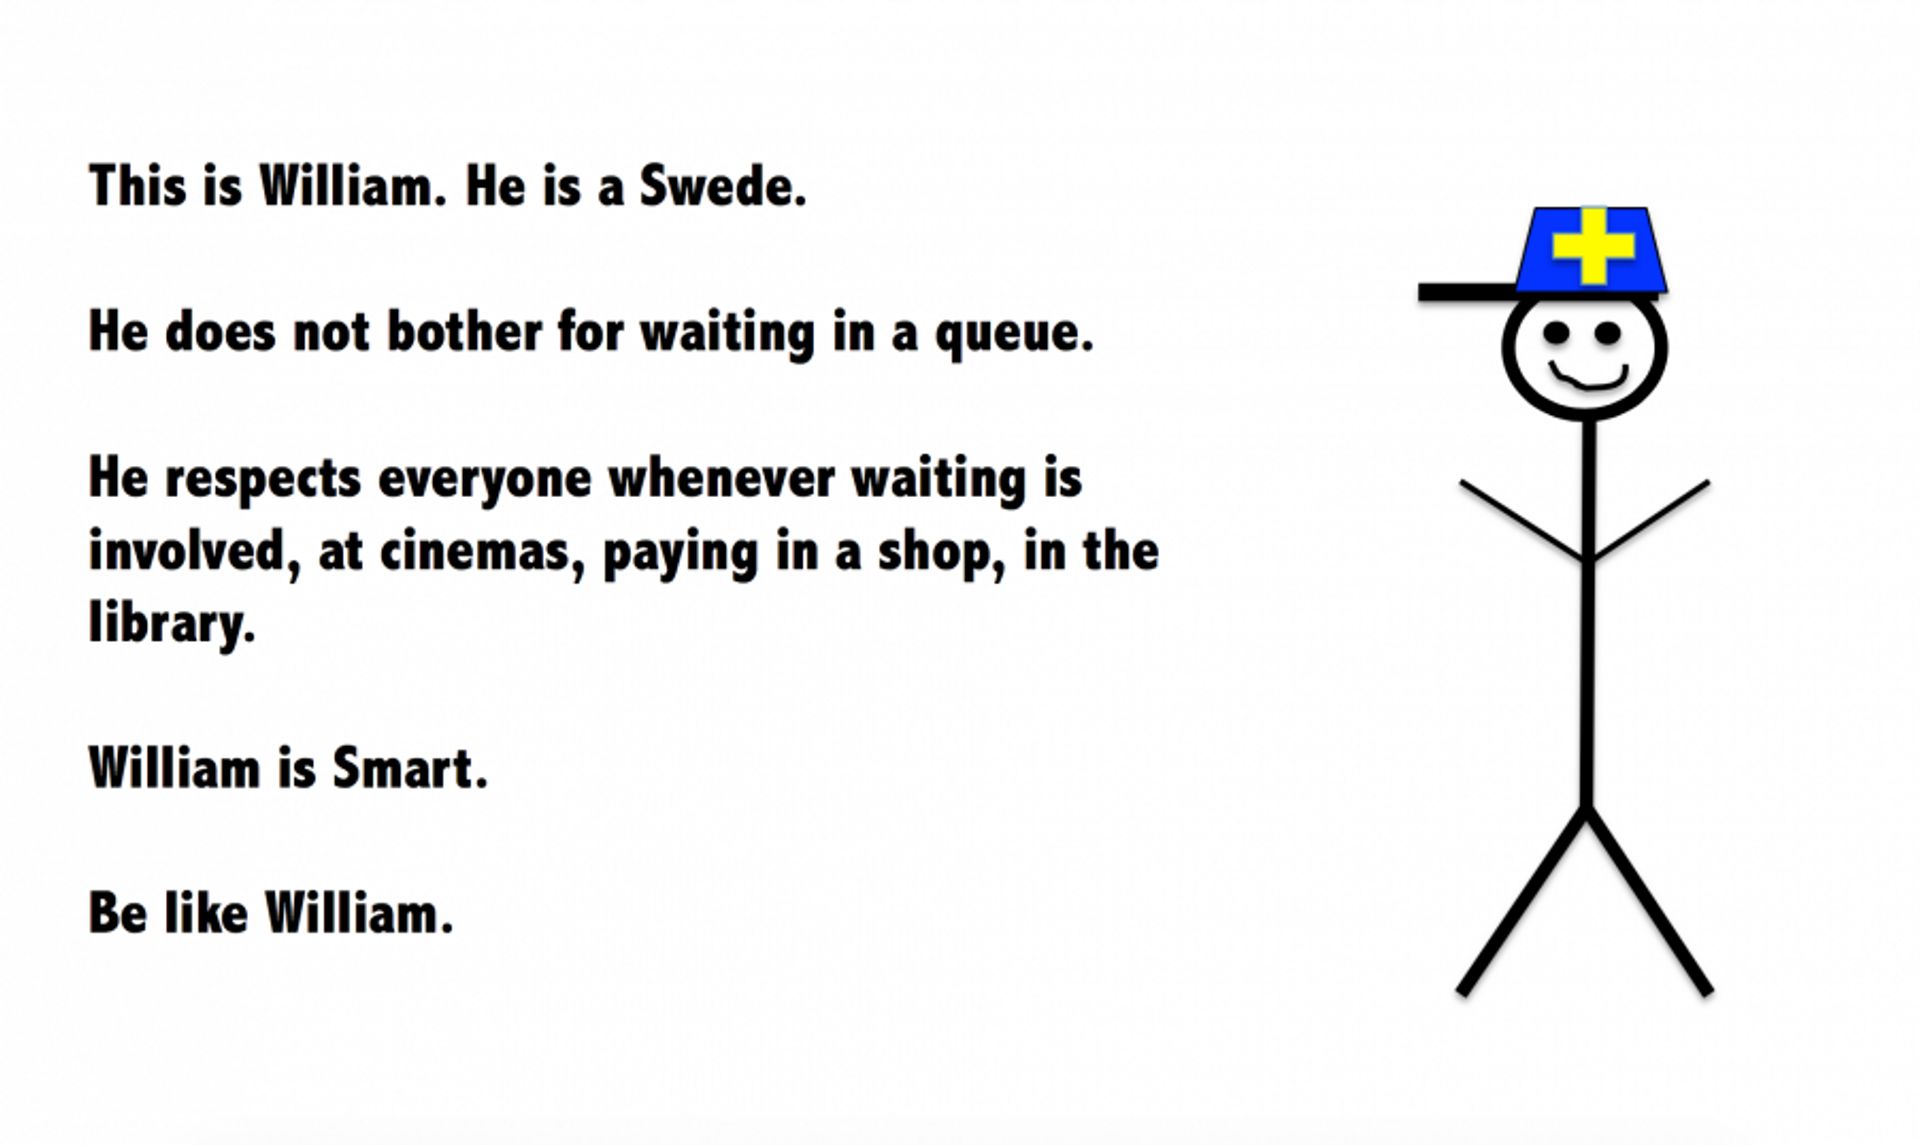 Be like a swede